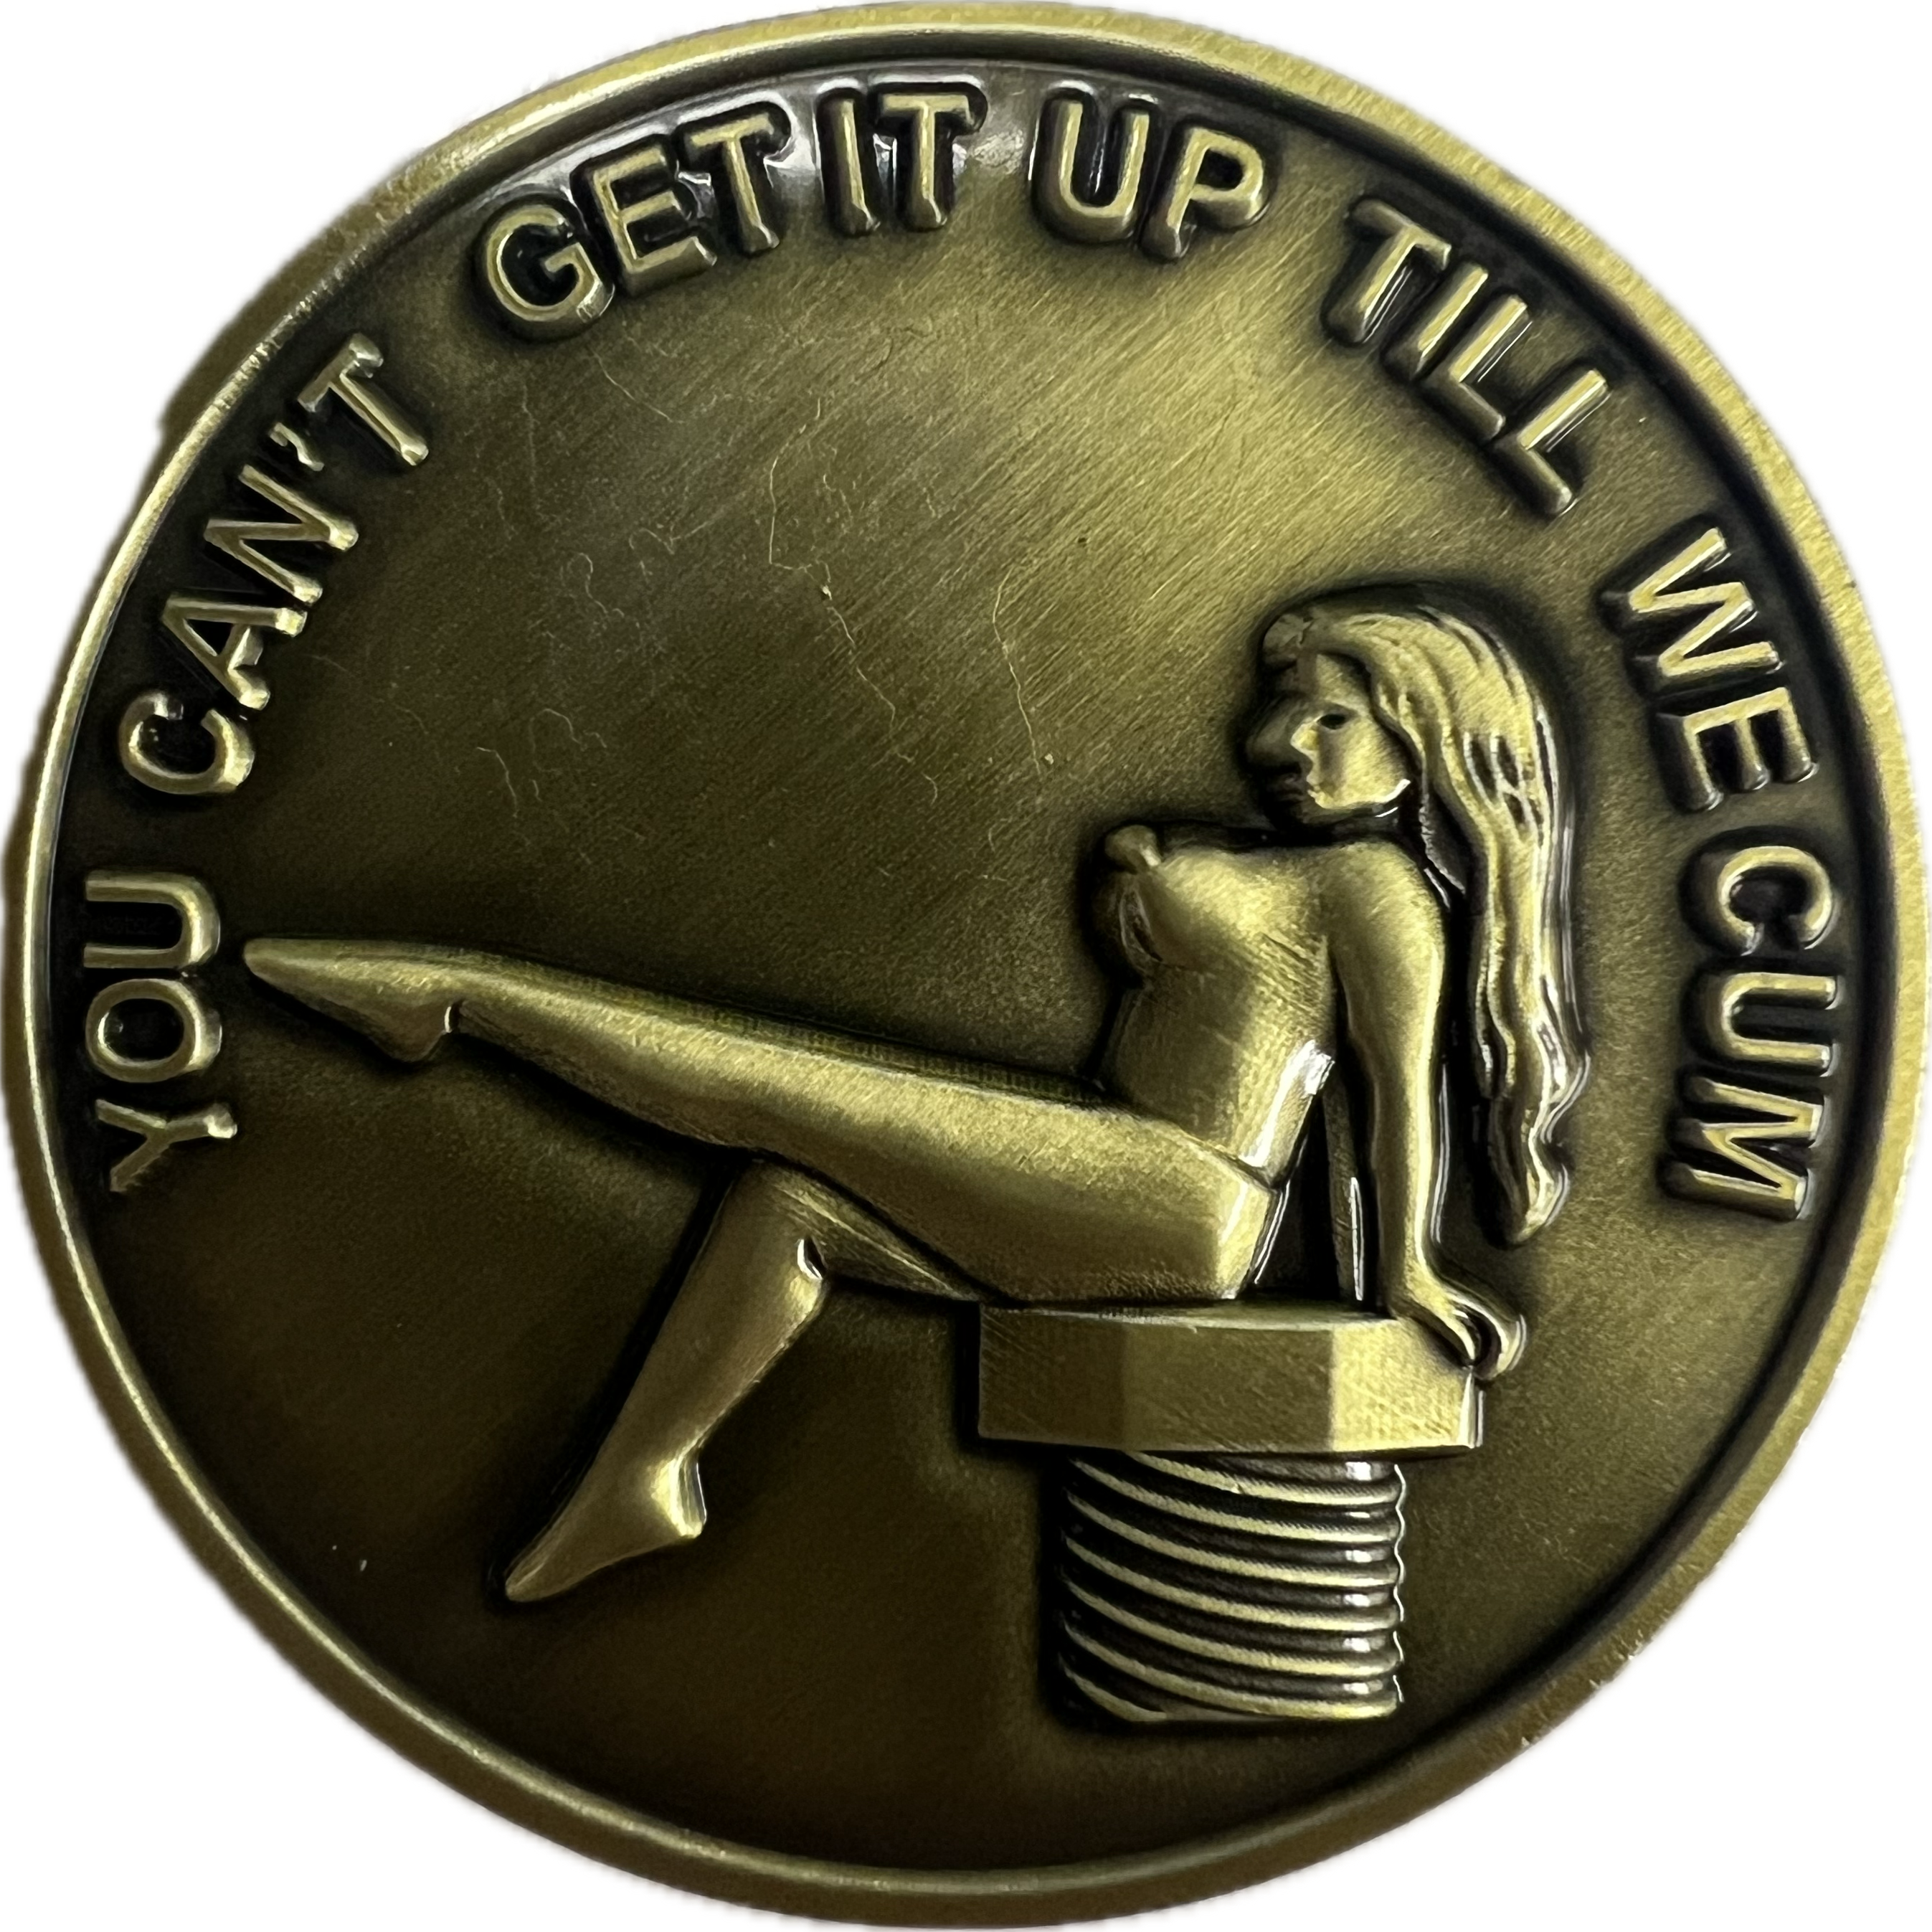 D.I.N.S.T.A.R, You Can't Get it up Till We...  - Challenge Coin (NSFW)